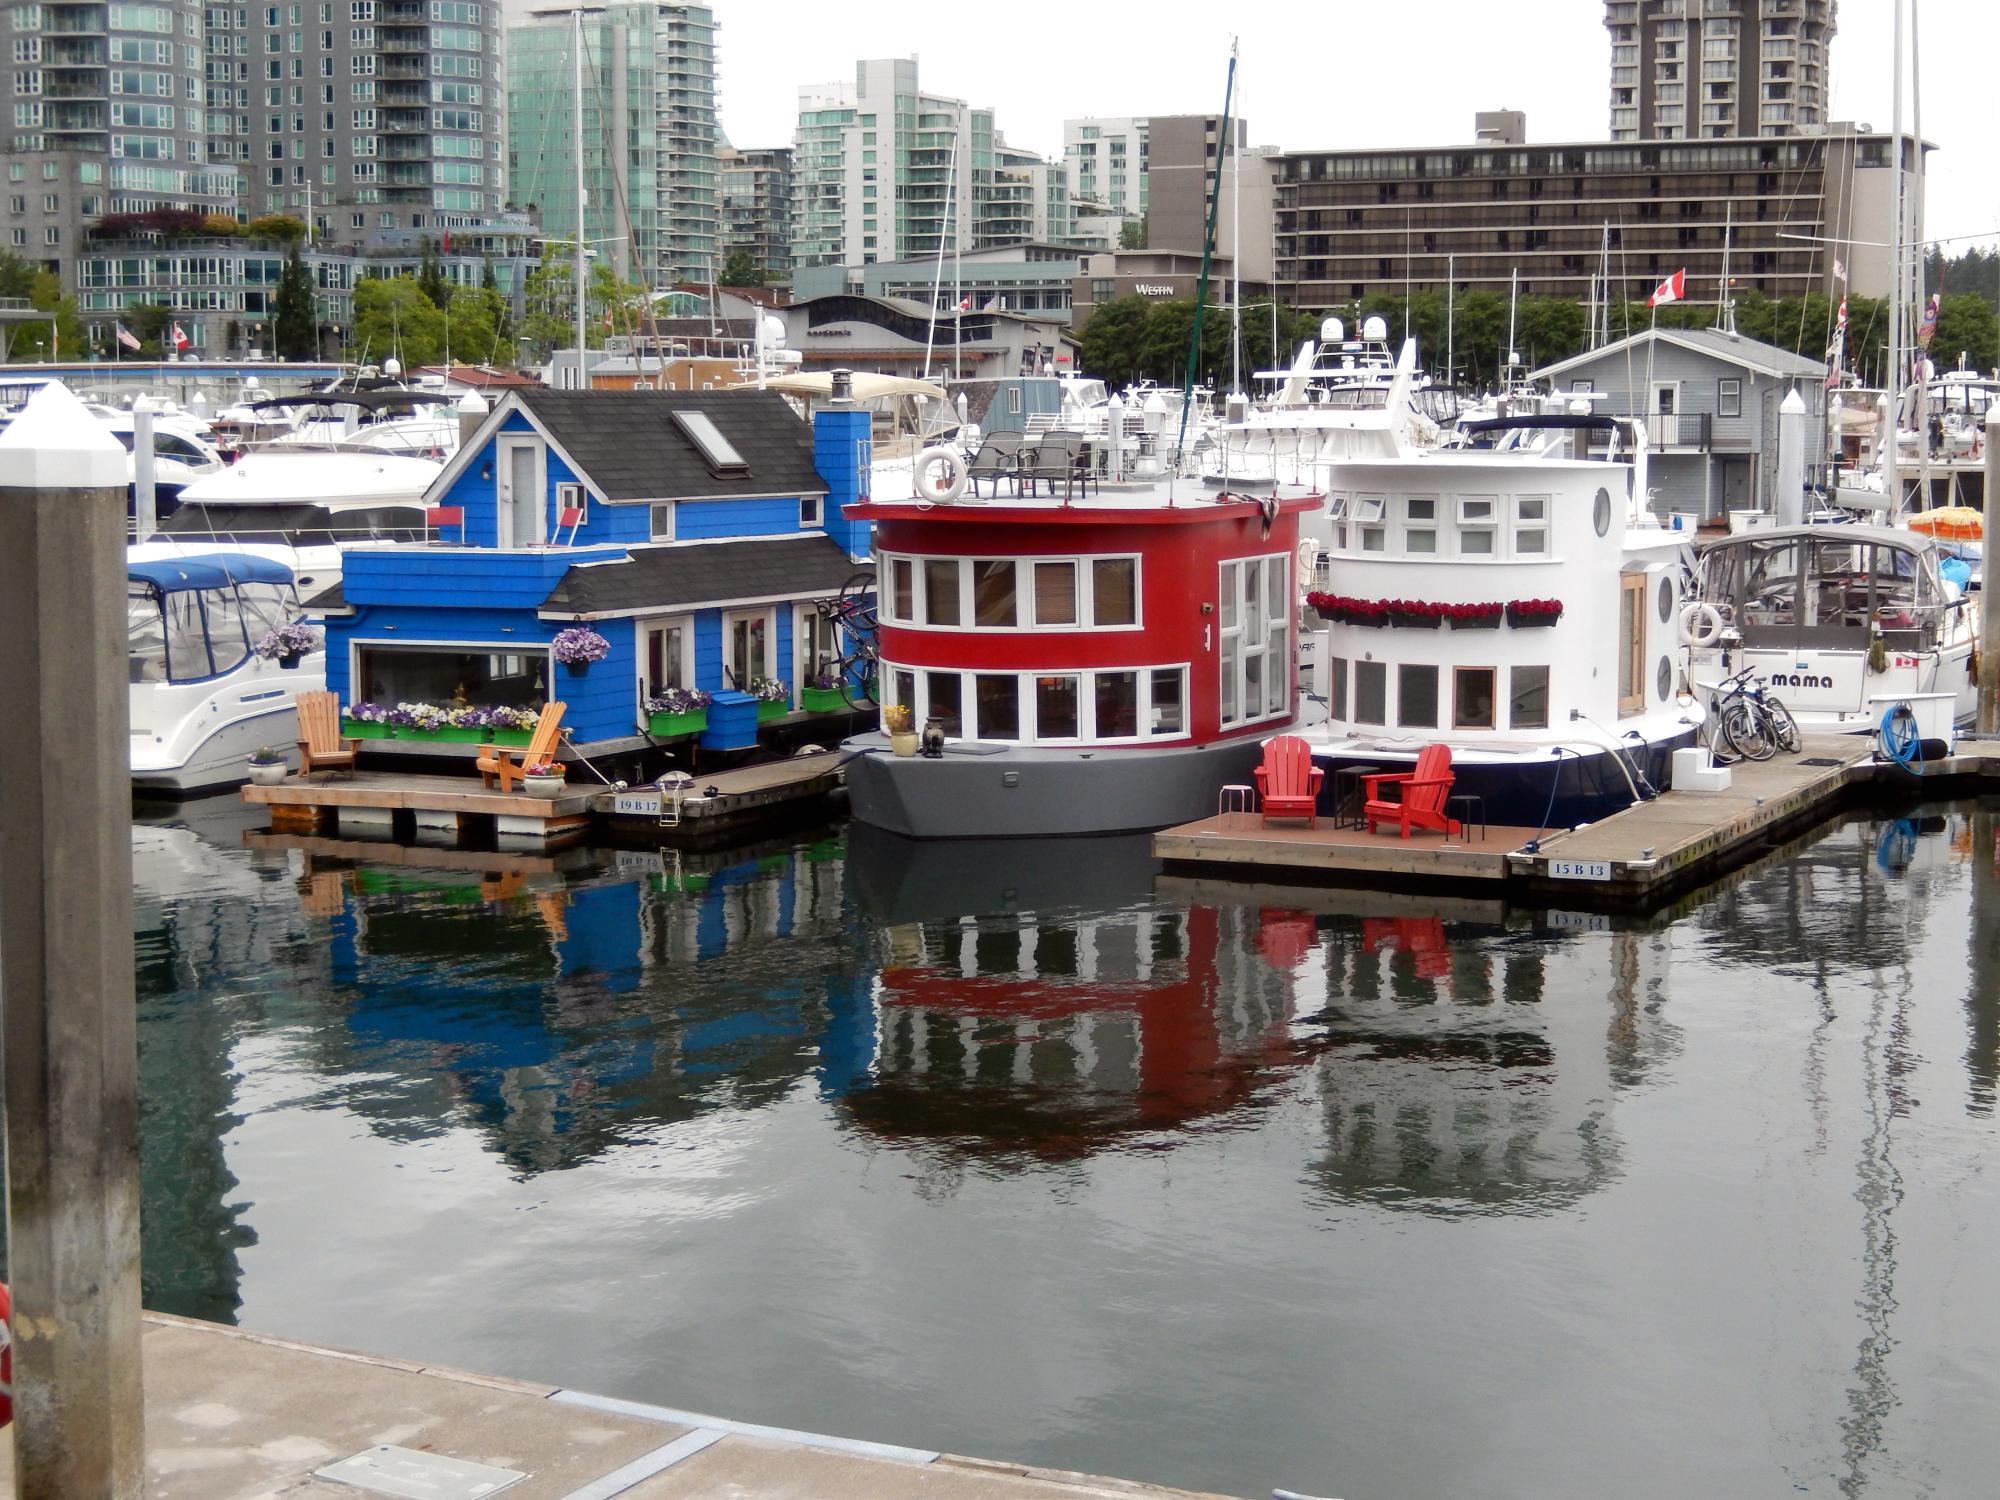 Canada - House Boats